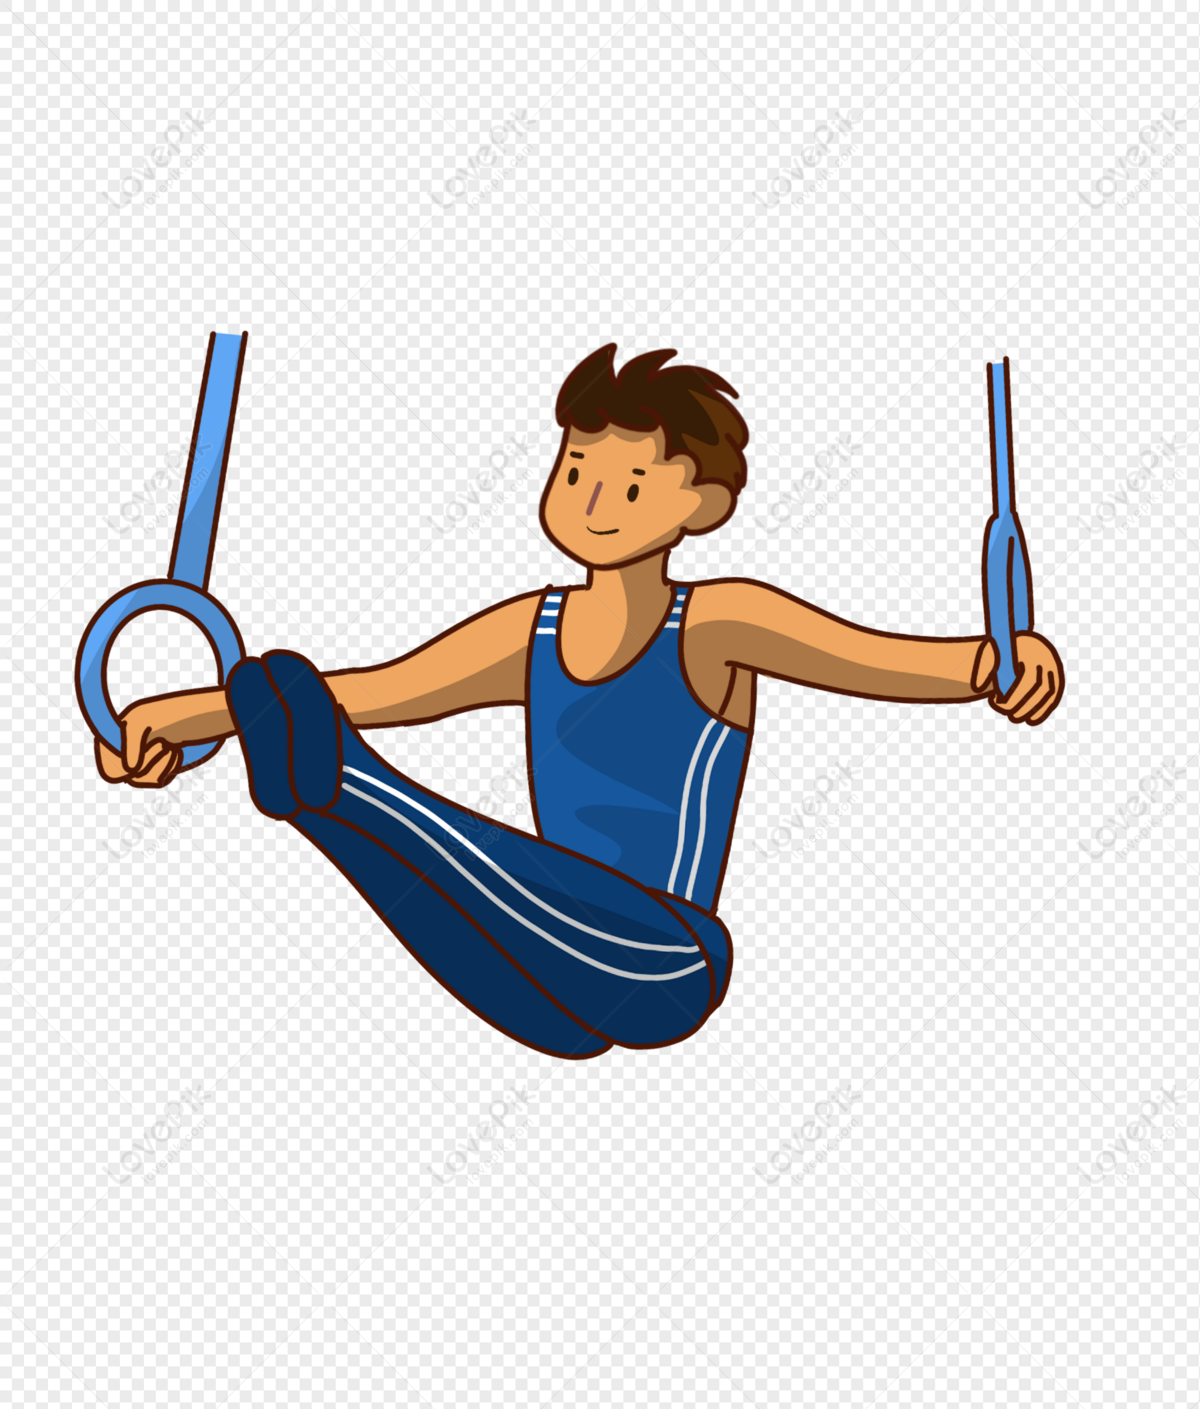 Gymnast Pose by Maki-Ubermach on DeviantArt